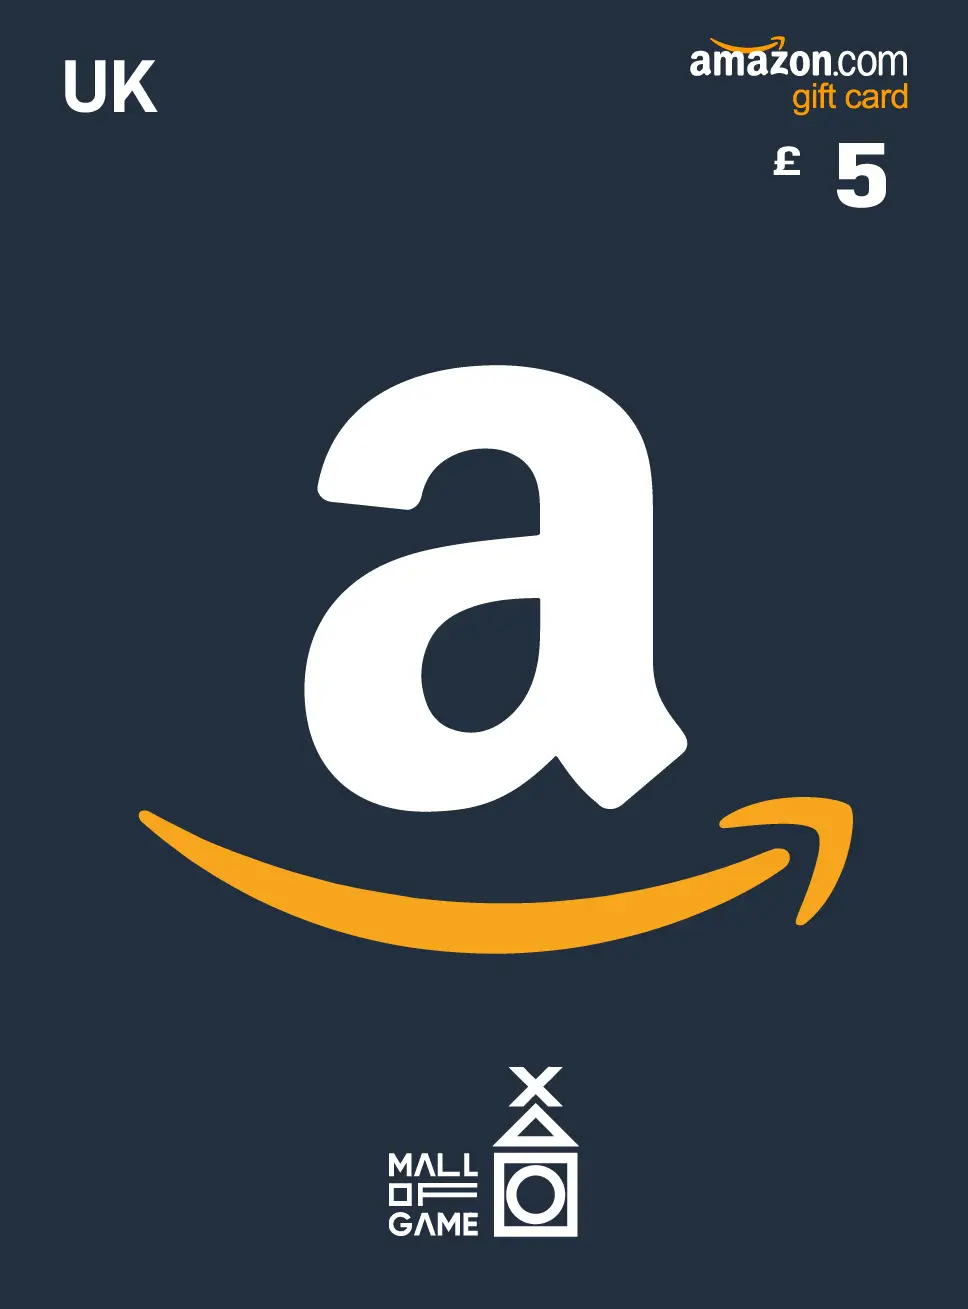 Amazon 5 GBP